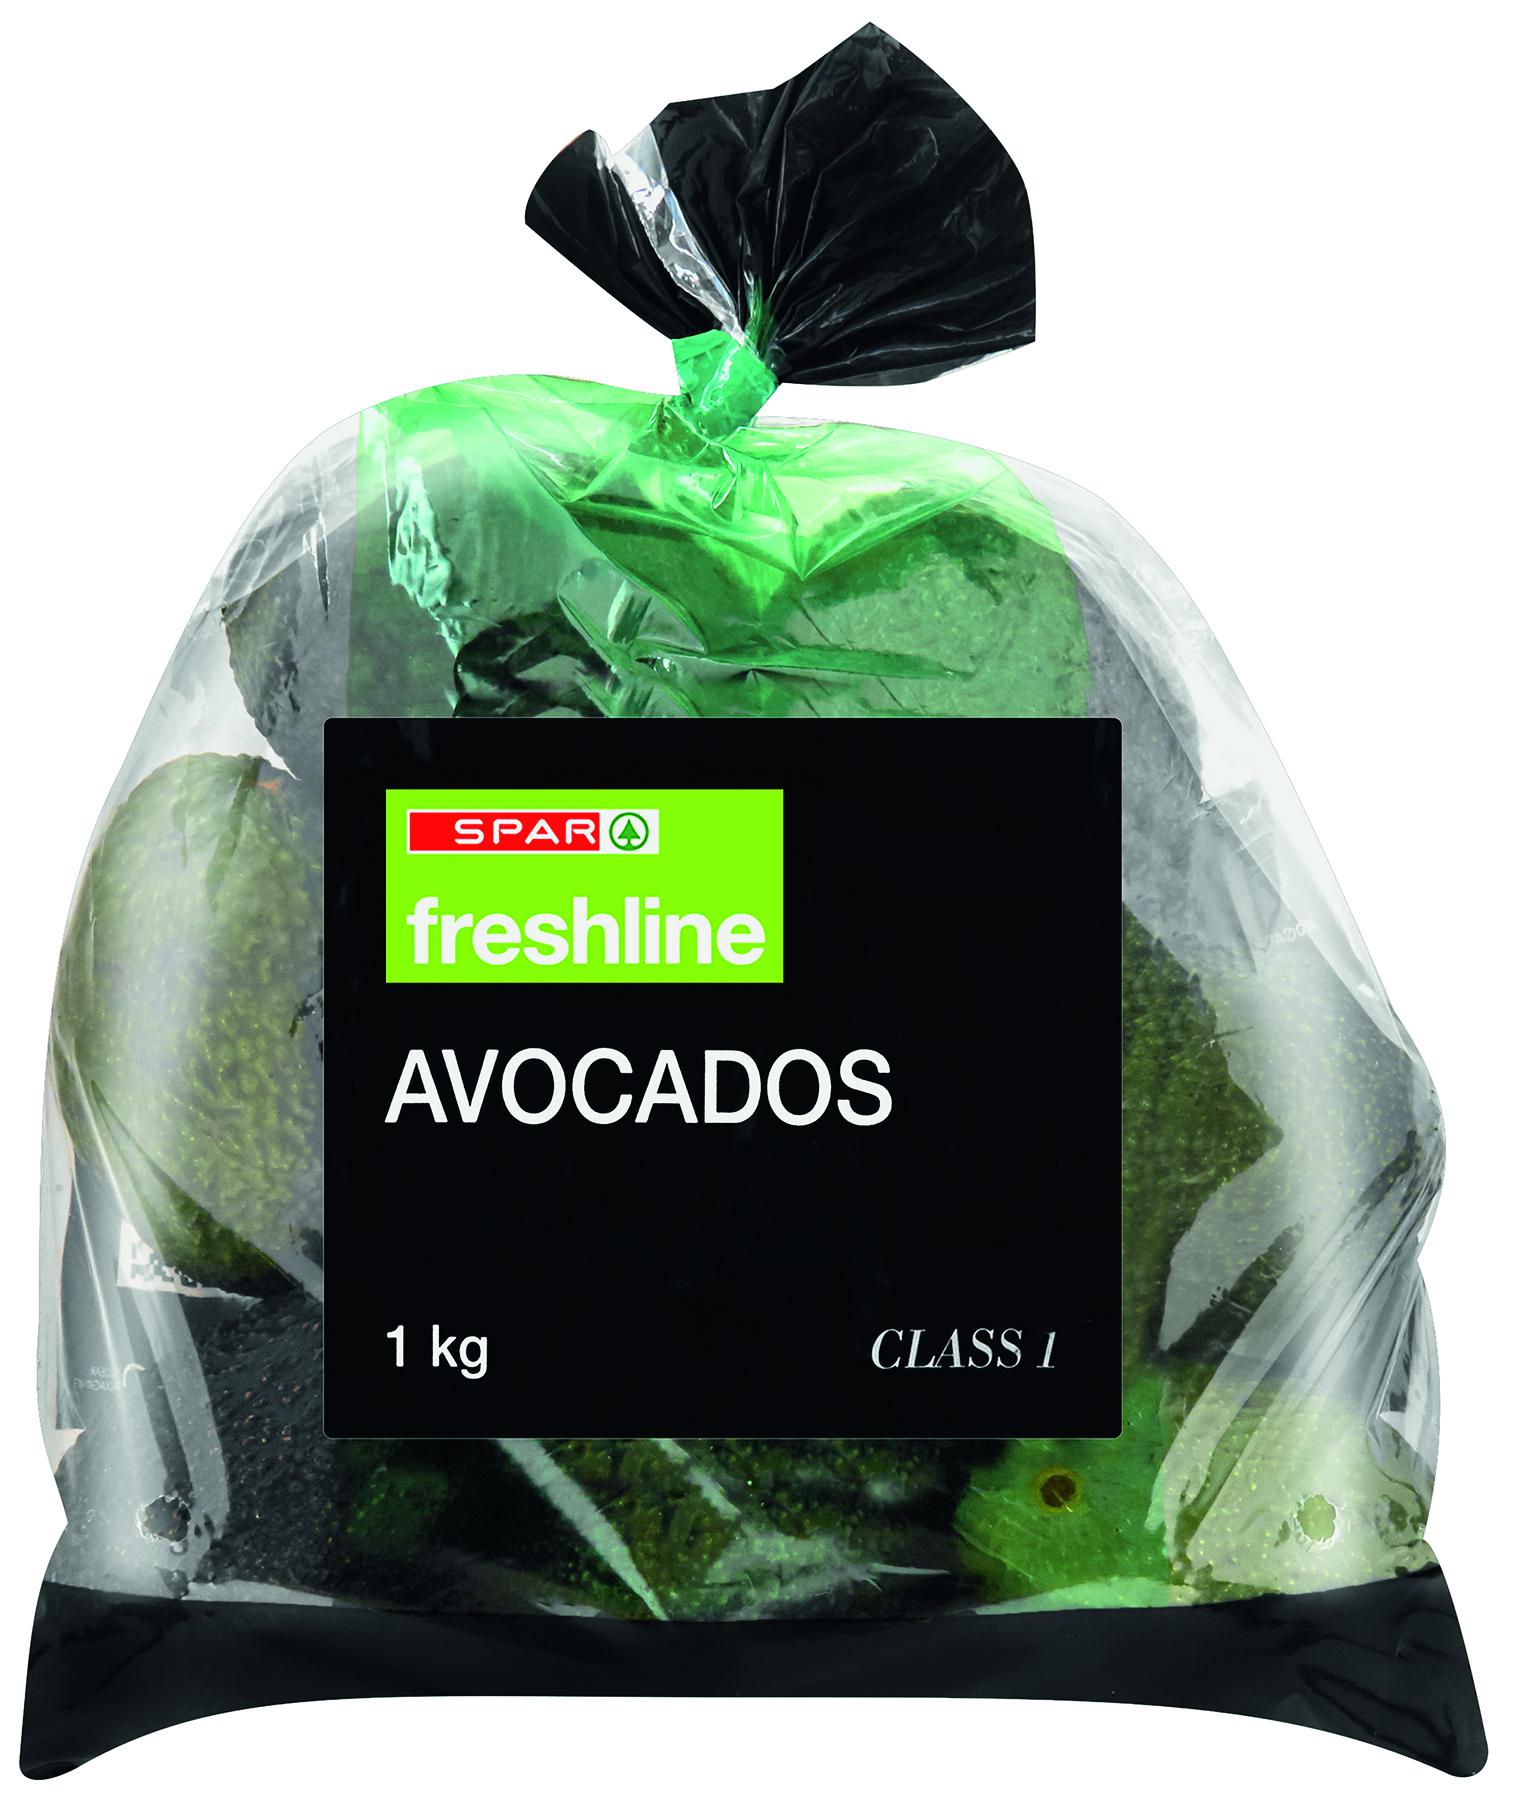 freshline avocado - value pack